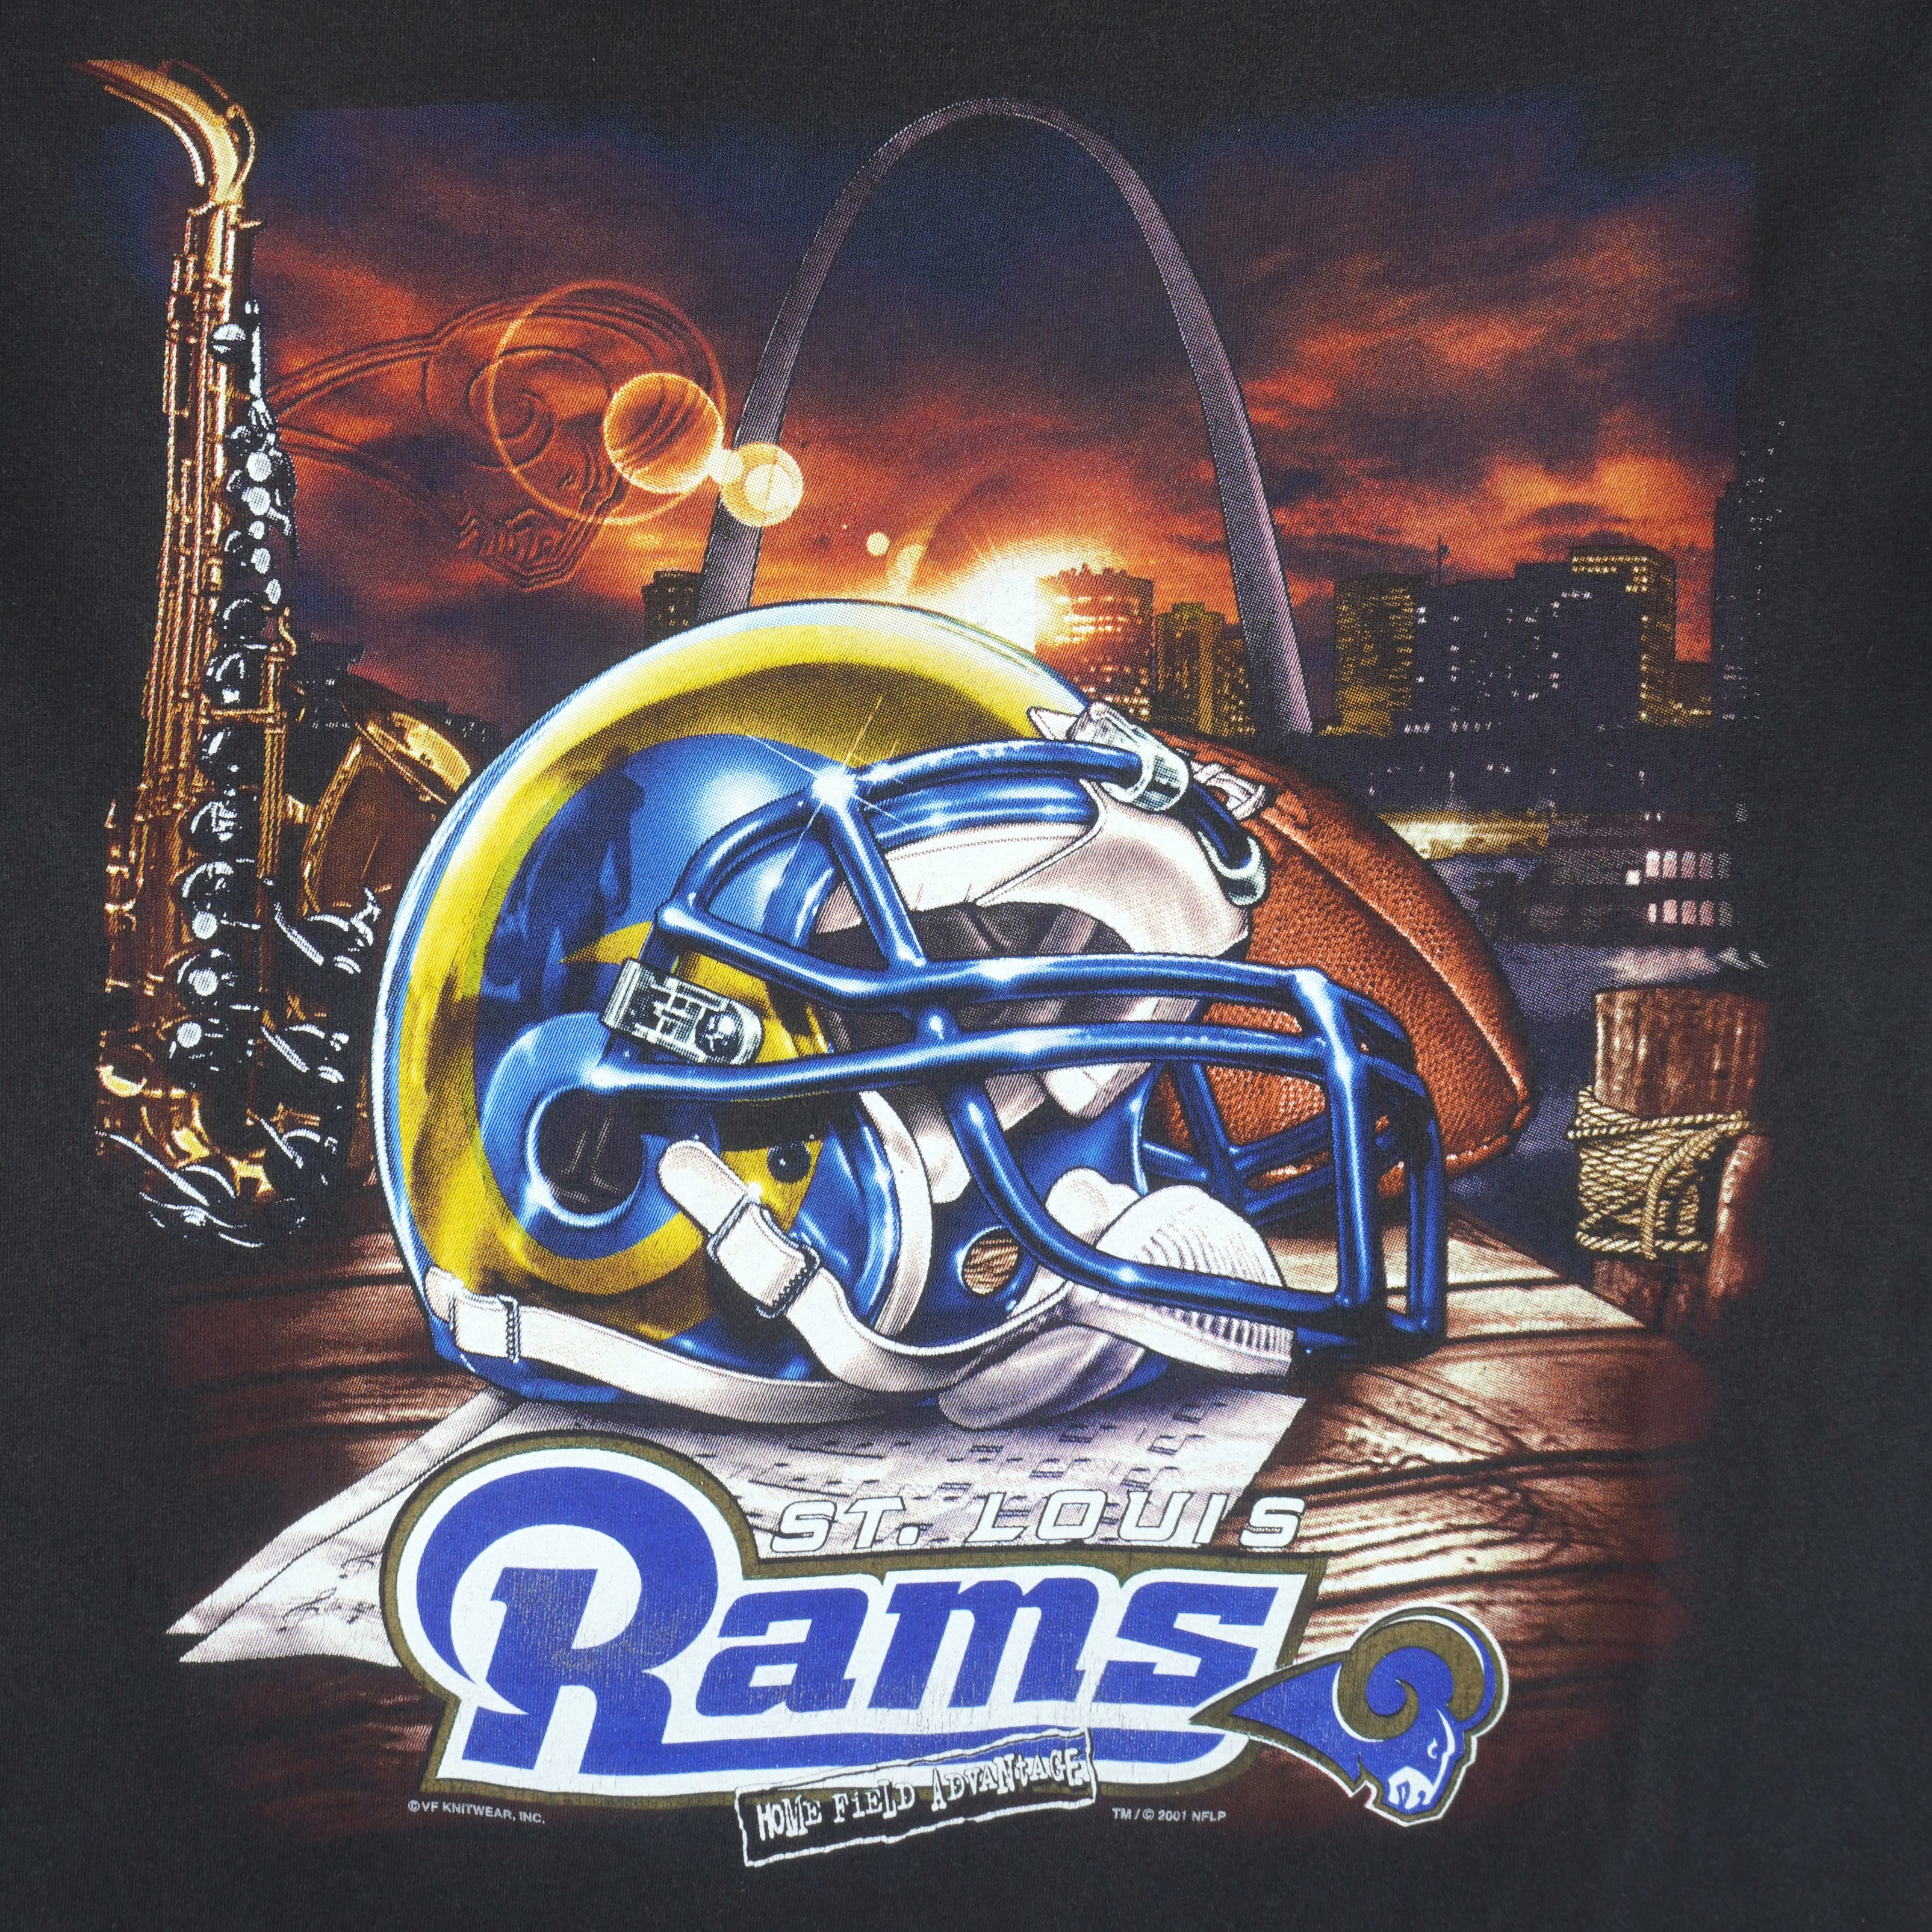 NFL, Shirts, Vintage 9s St Louis Rams Hoodie Sweatshirt